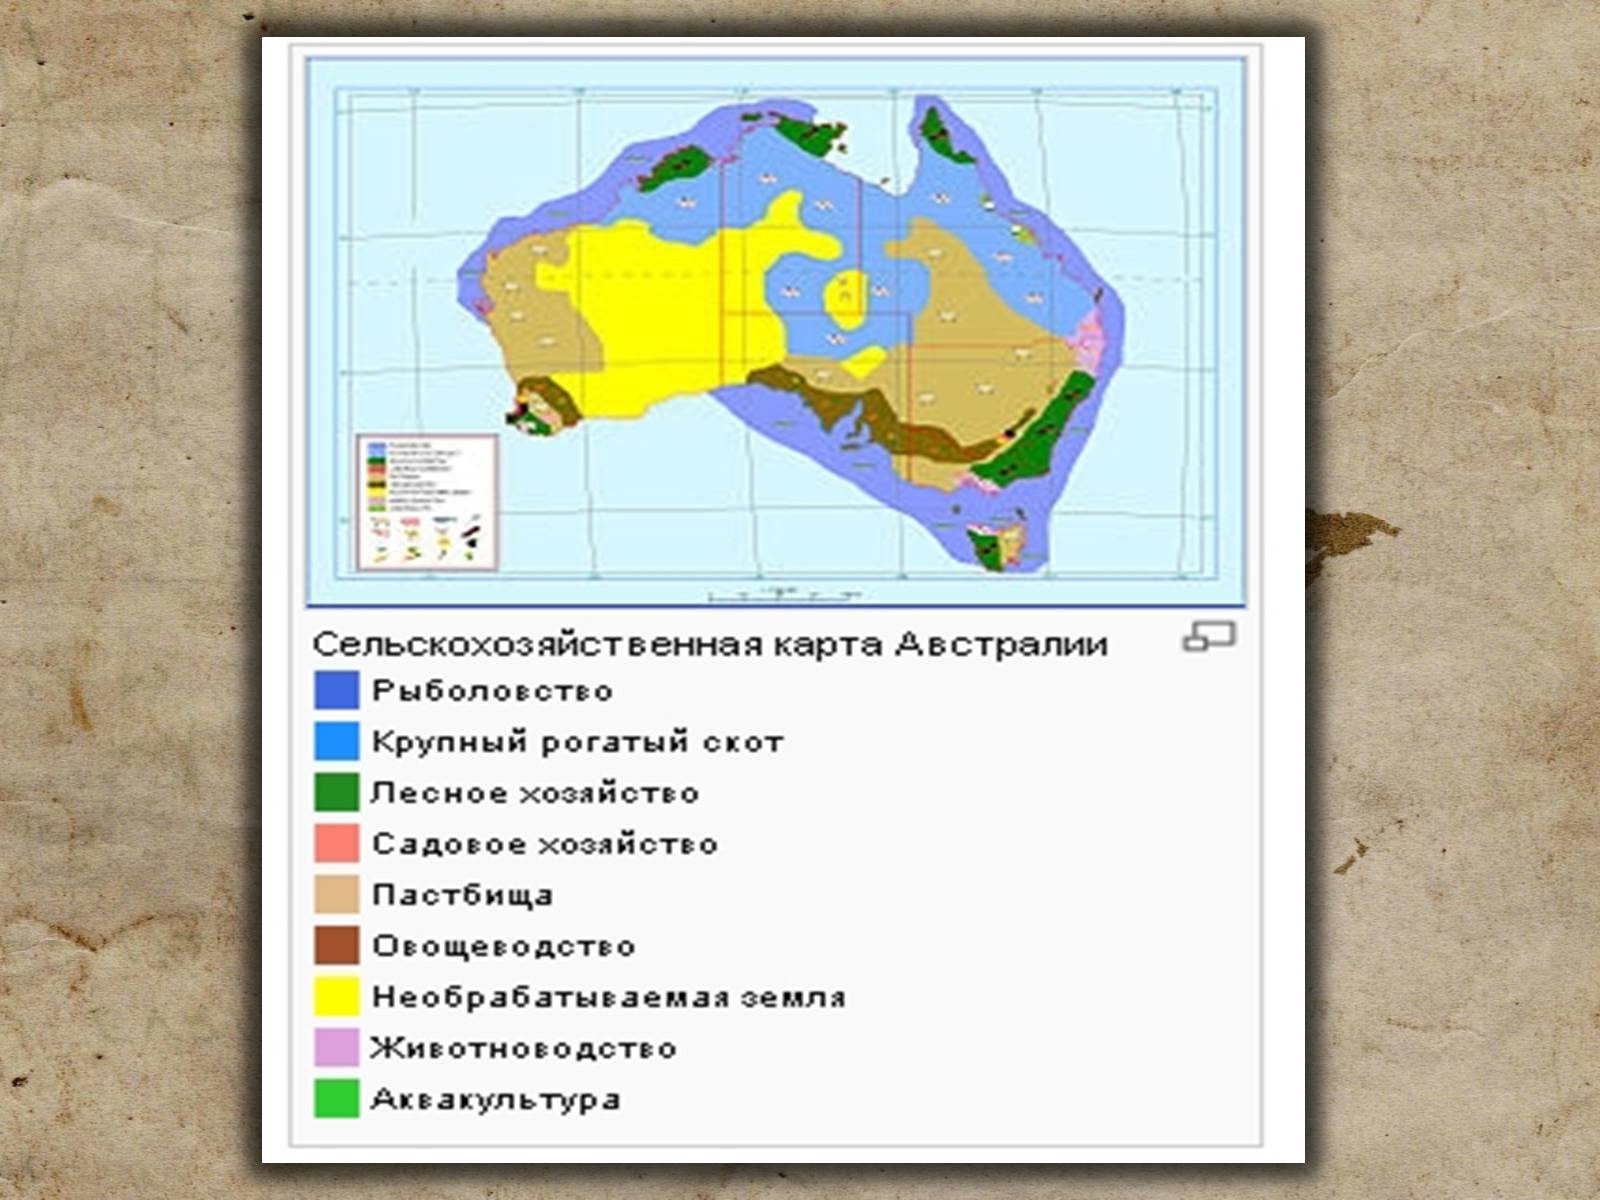 Размещение населения австралия и океания. Районы сельского хозяйства Австралии на карте. Сельскохозяйственные районы на территории Австралии. Сельское хозяйство Австралии карта. Основные сельскохозяйственные районы Австралии на карте.